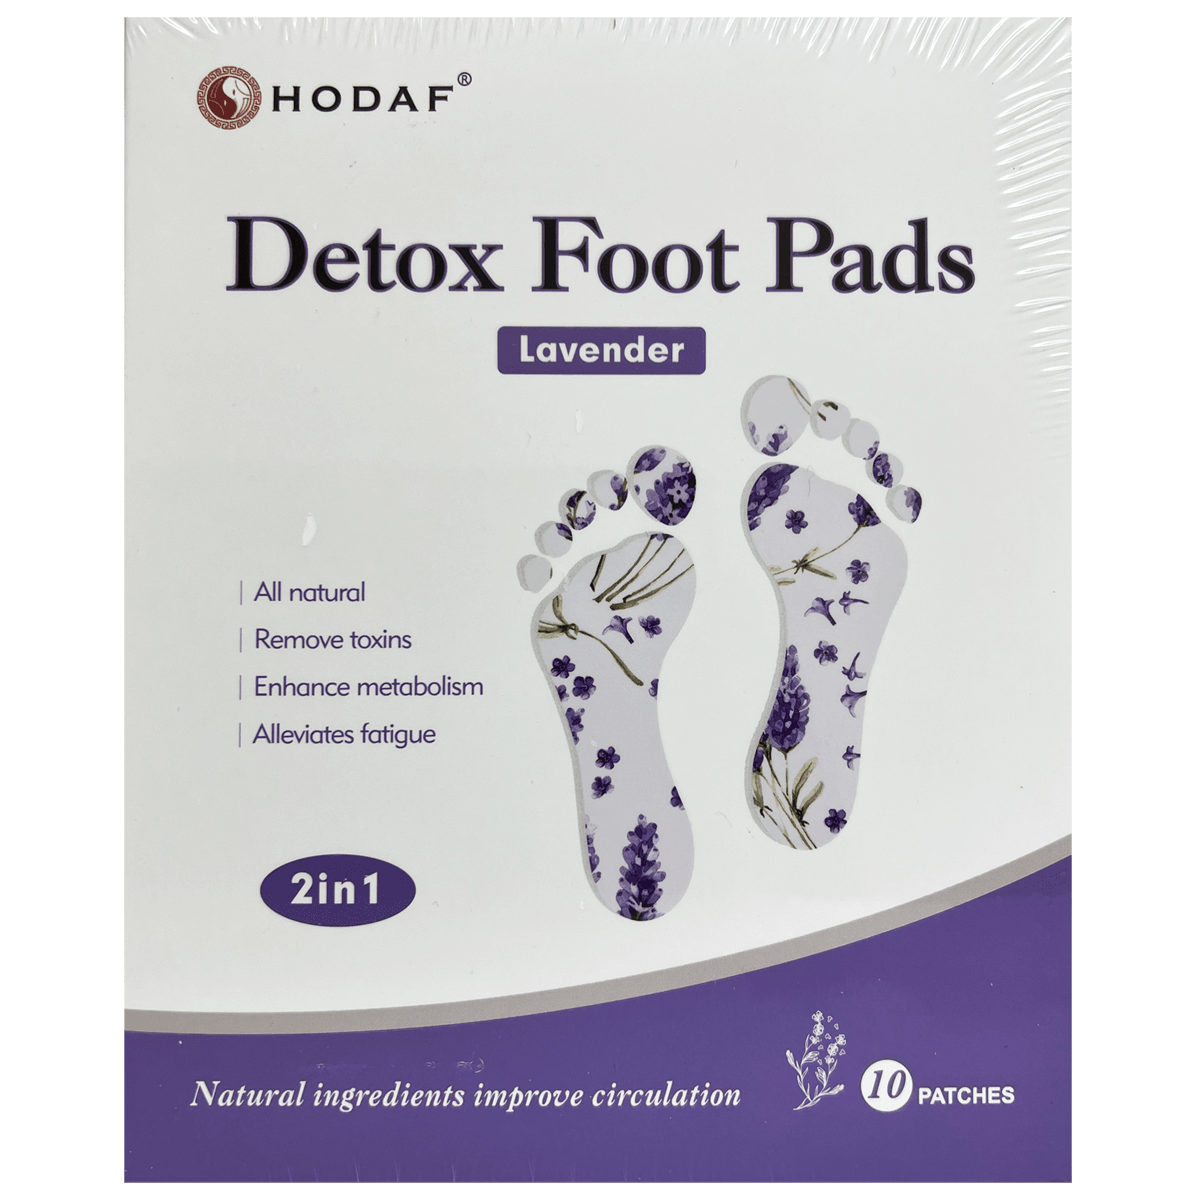 HODAF Detox Foot Pads